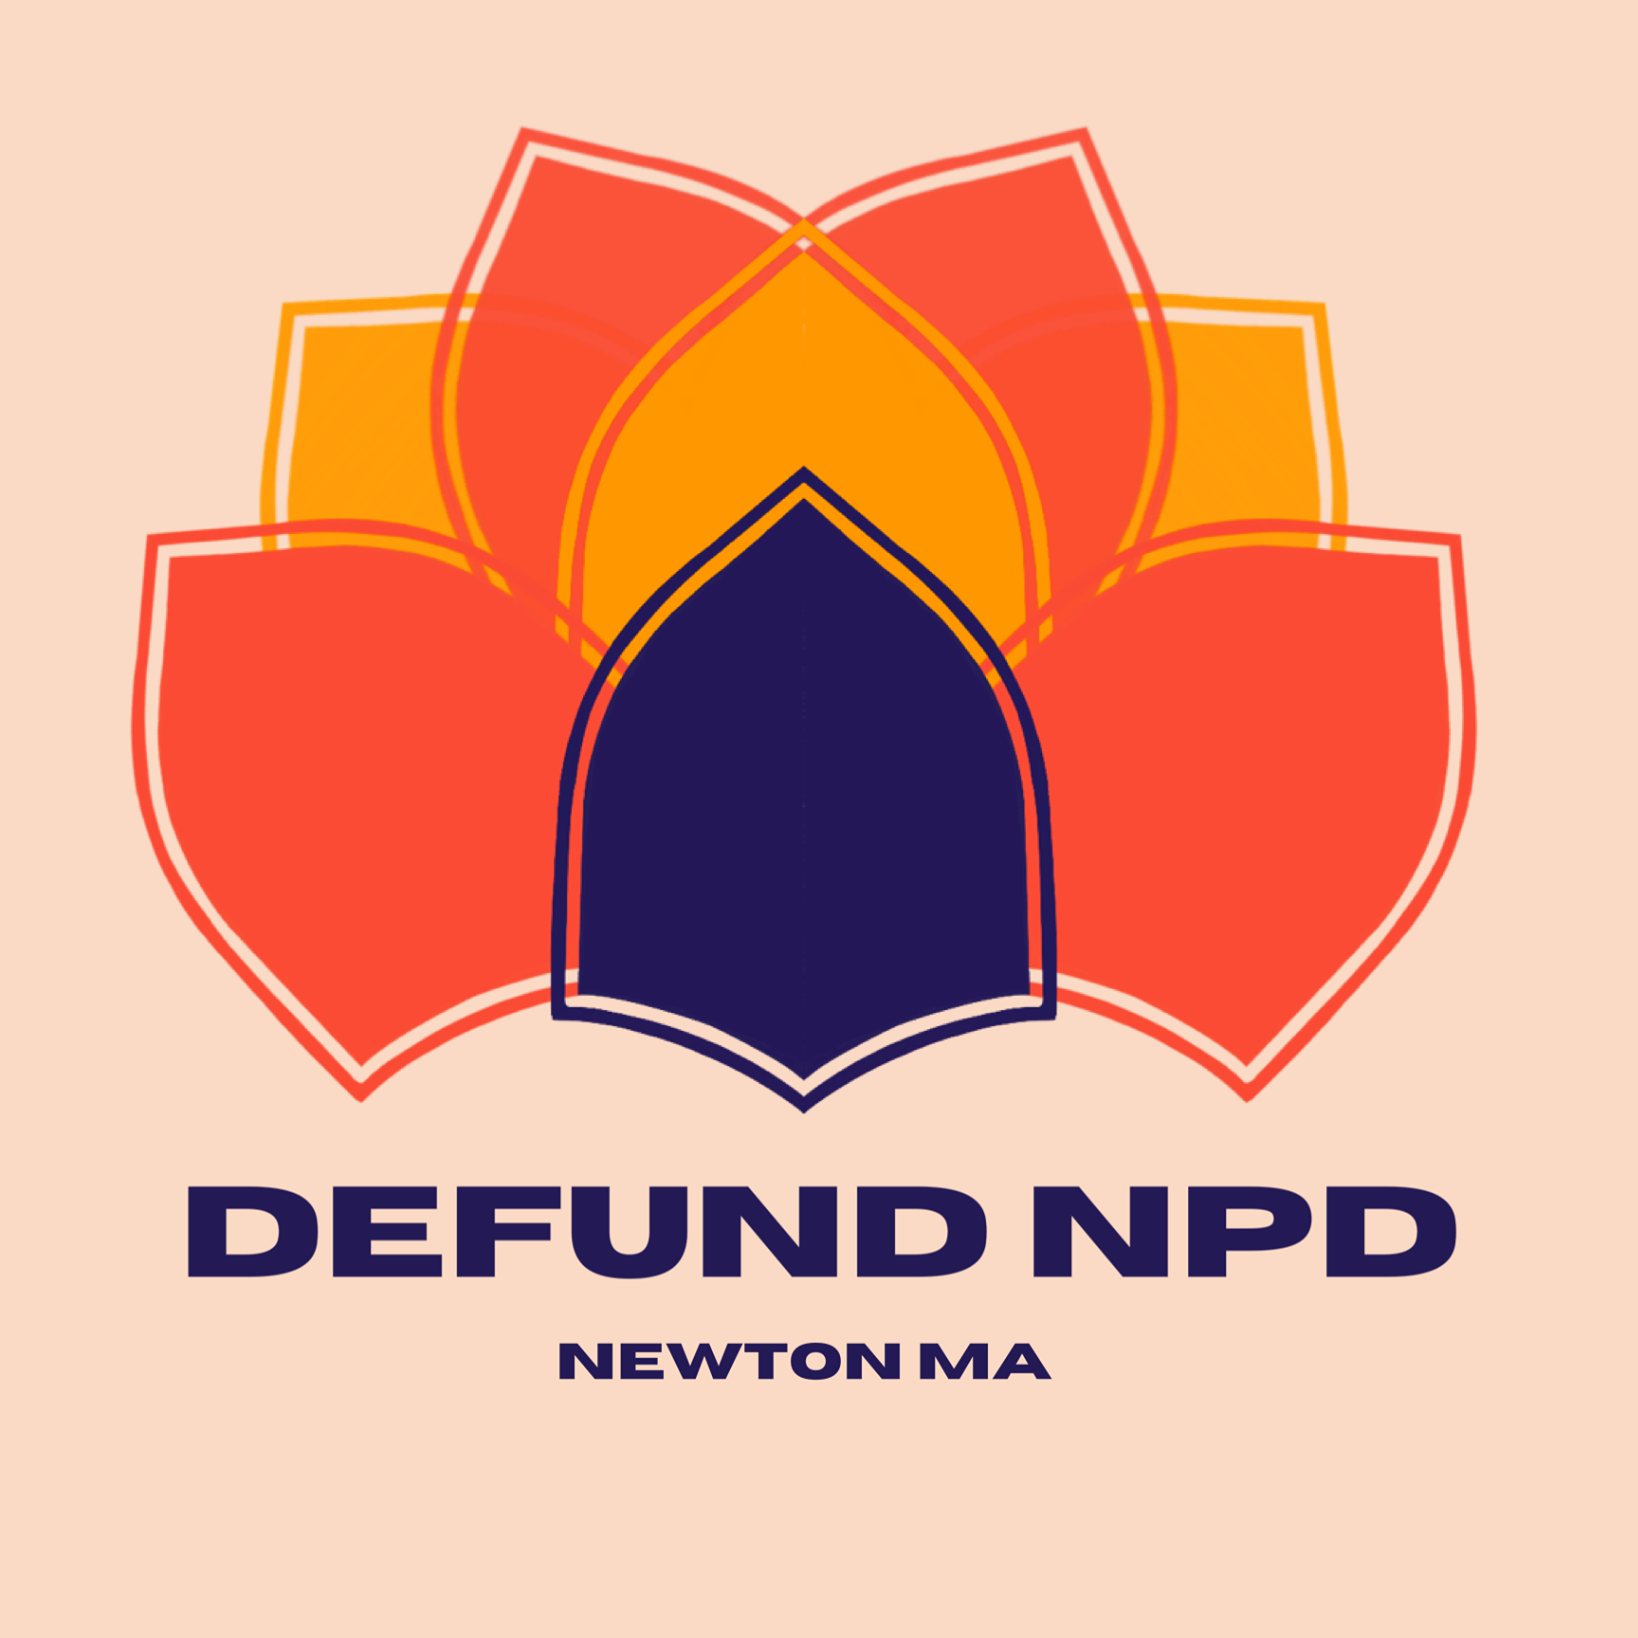 Defound NPD